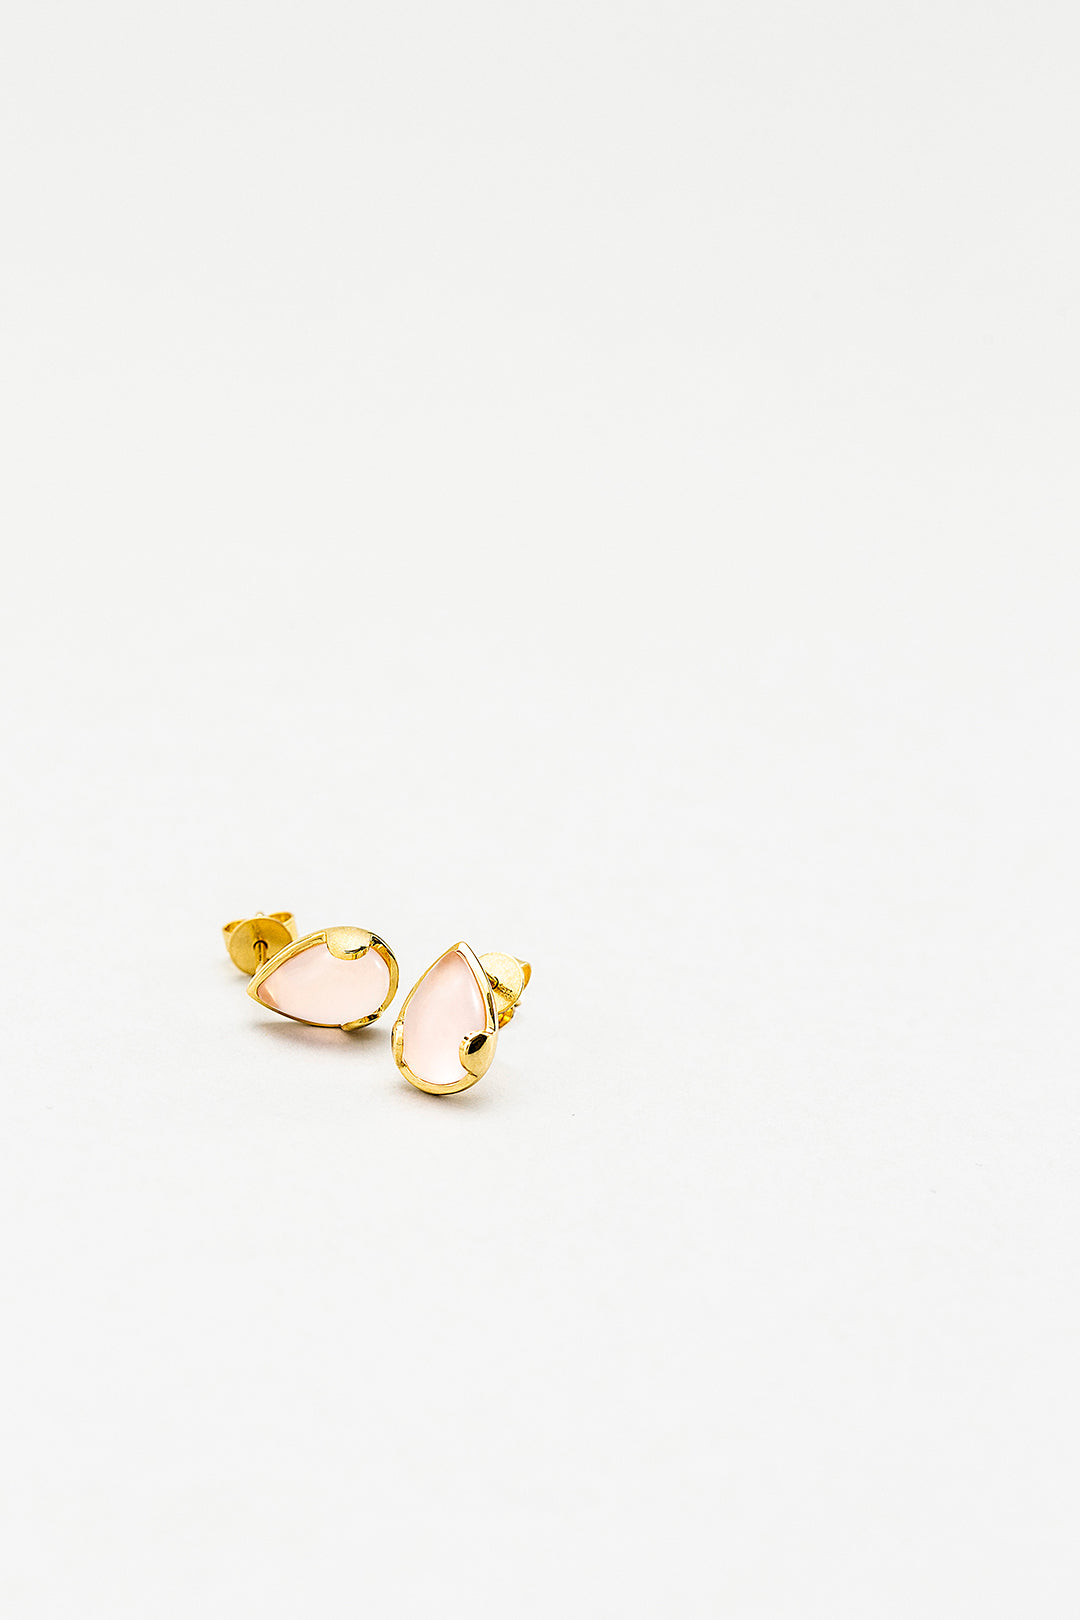 Tijo Classic Asha Gold Earrings | Tijo Jewellery